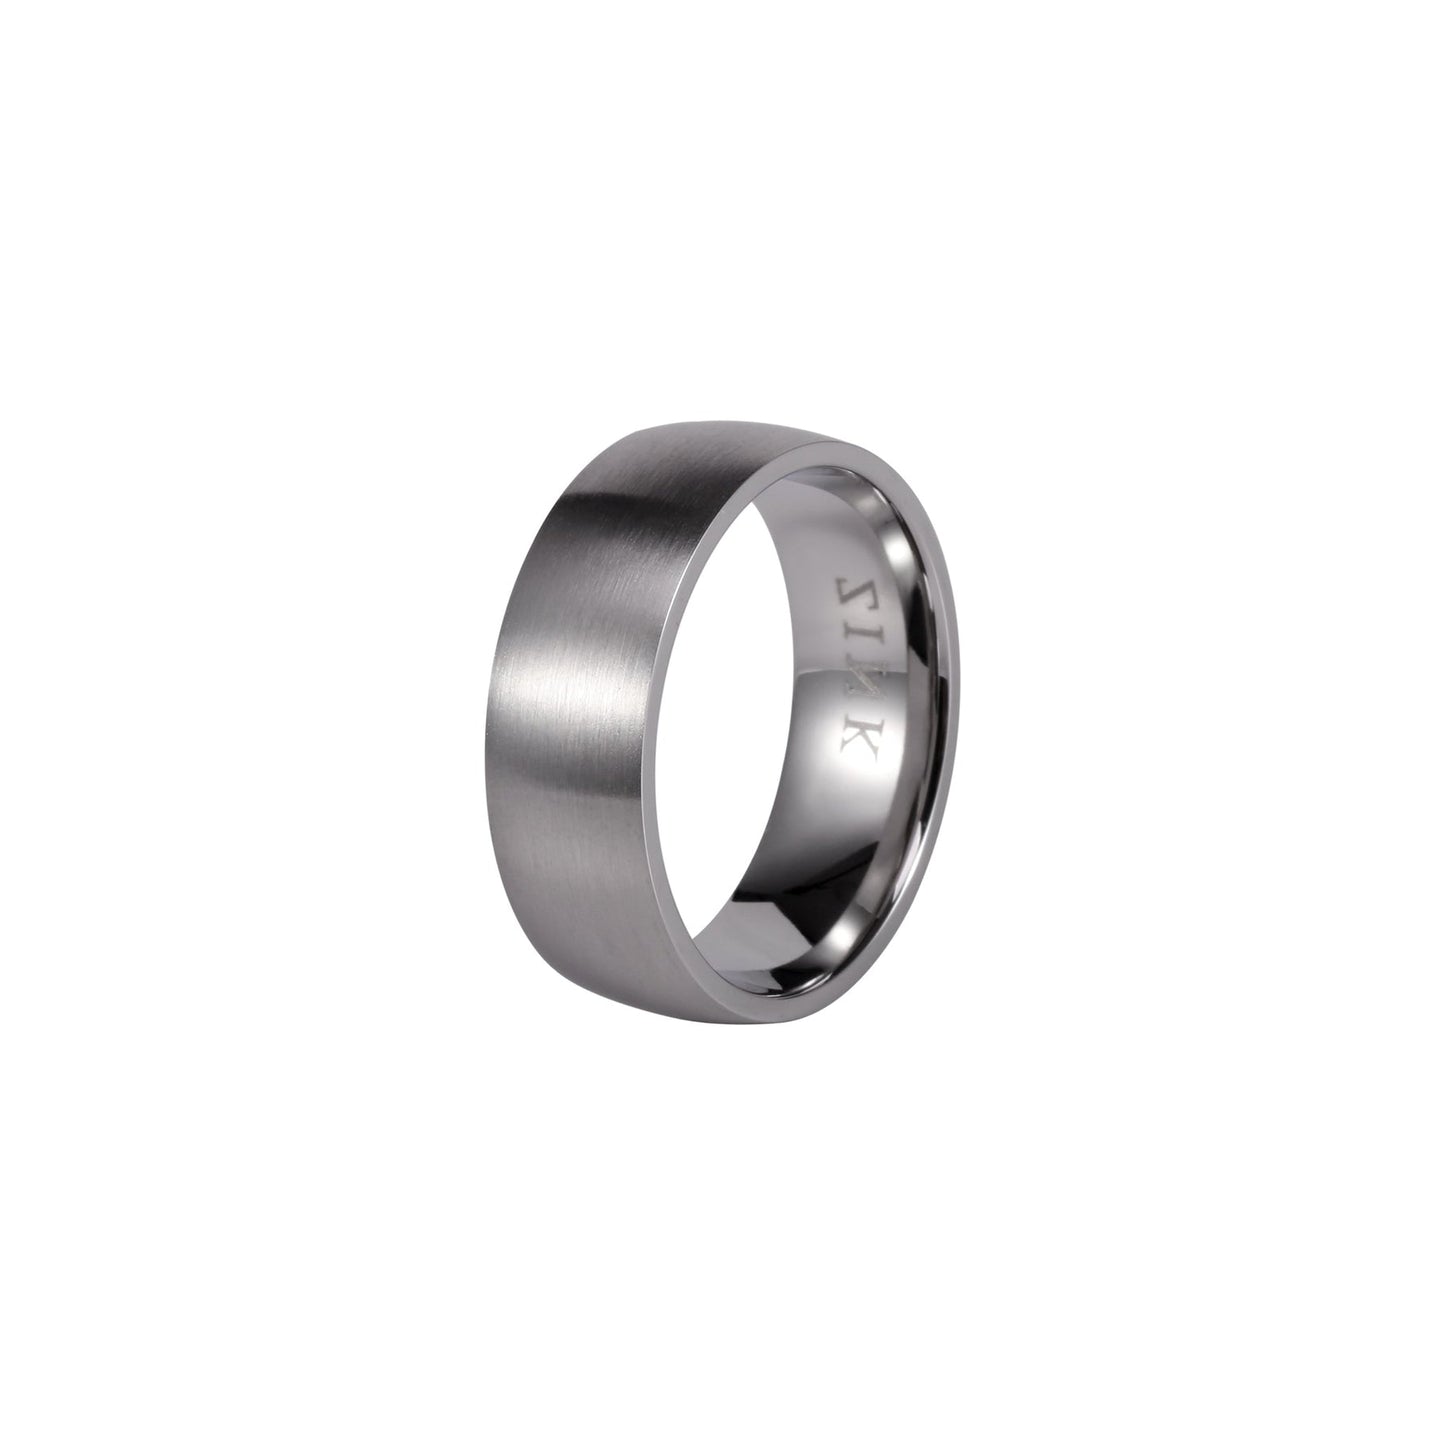 ZJRG001SP ZINK Men's Ring